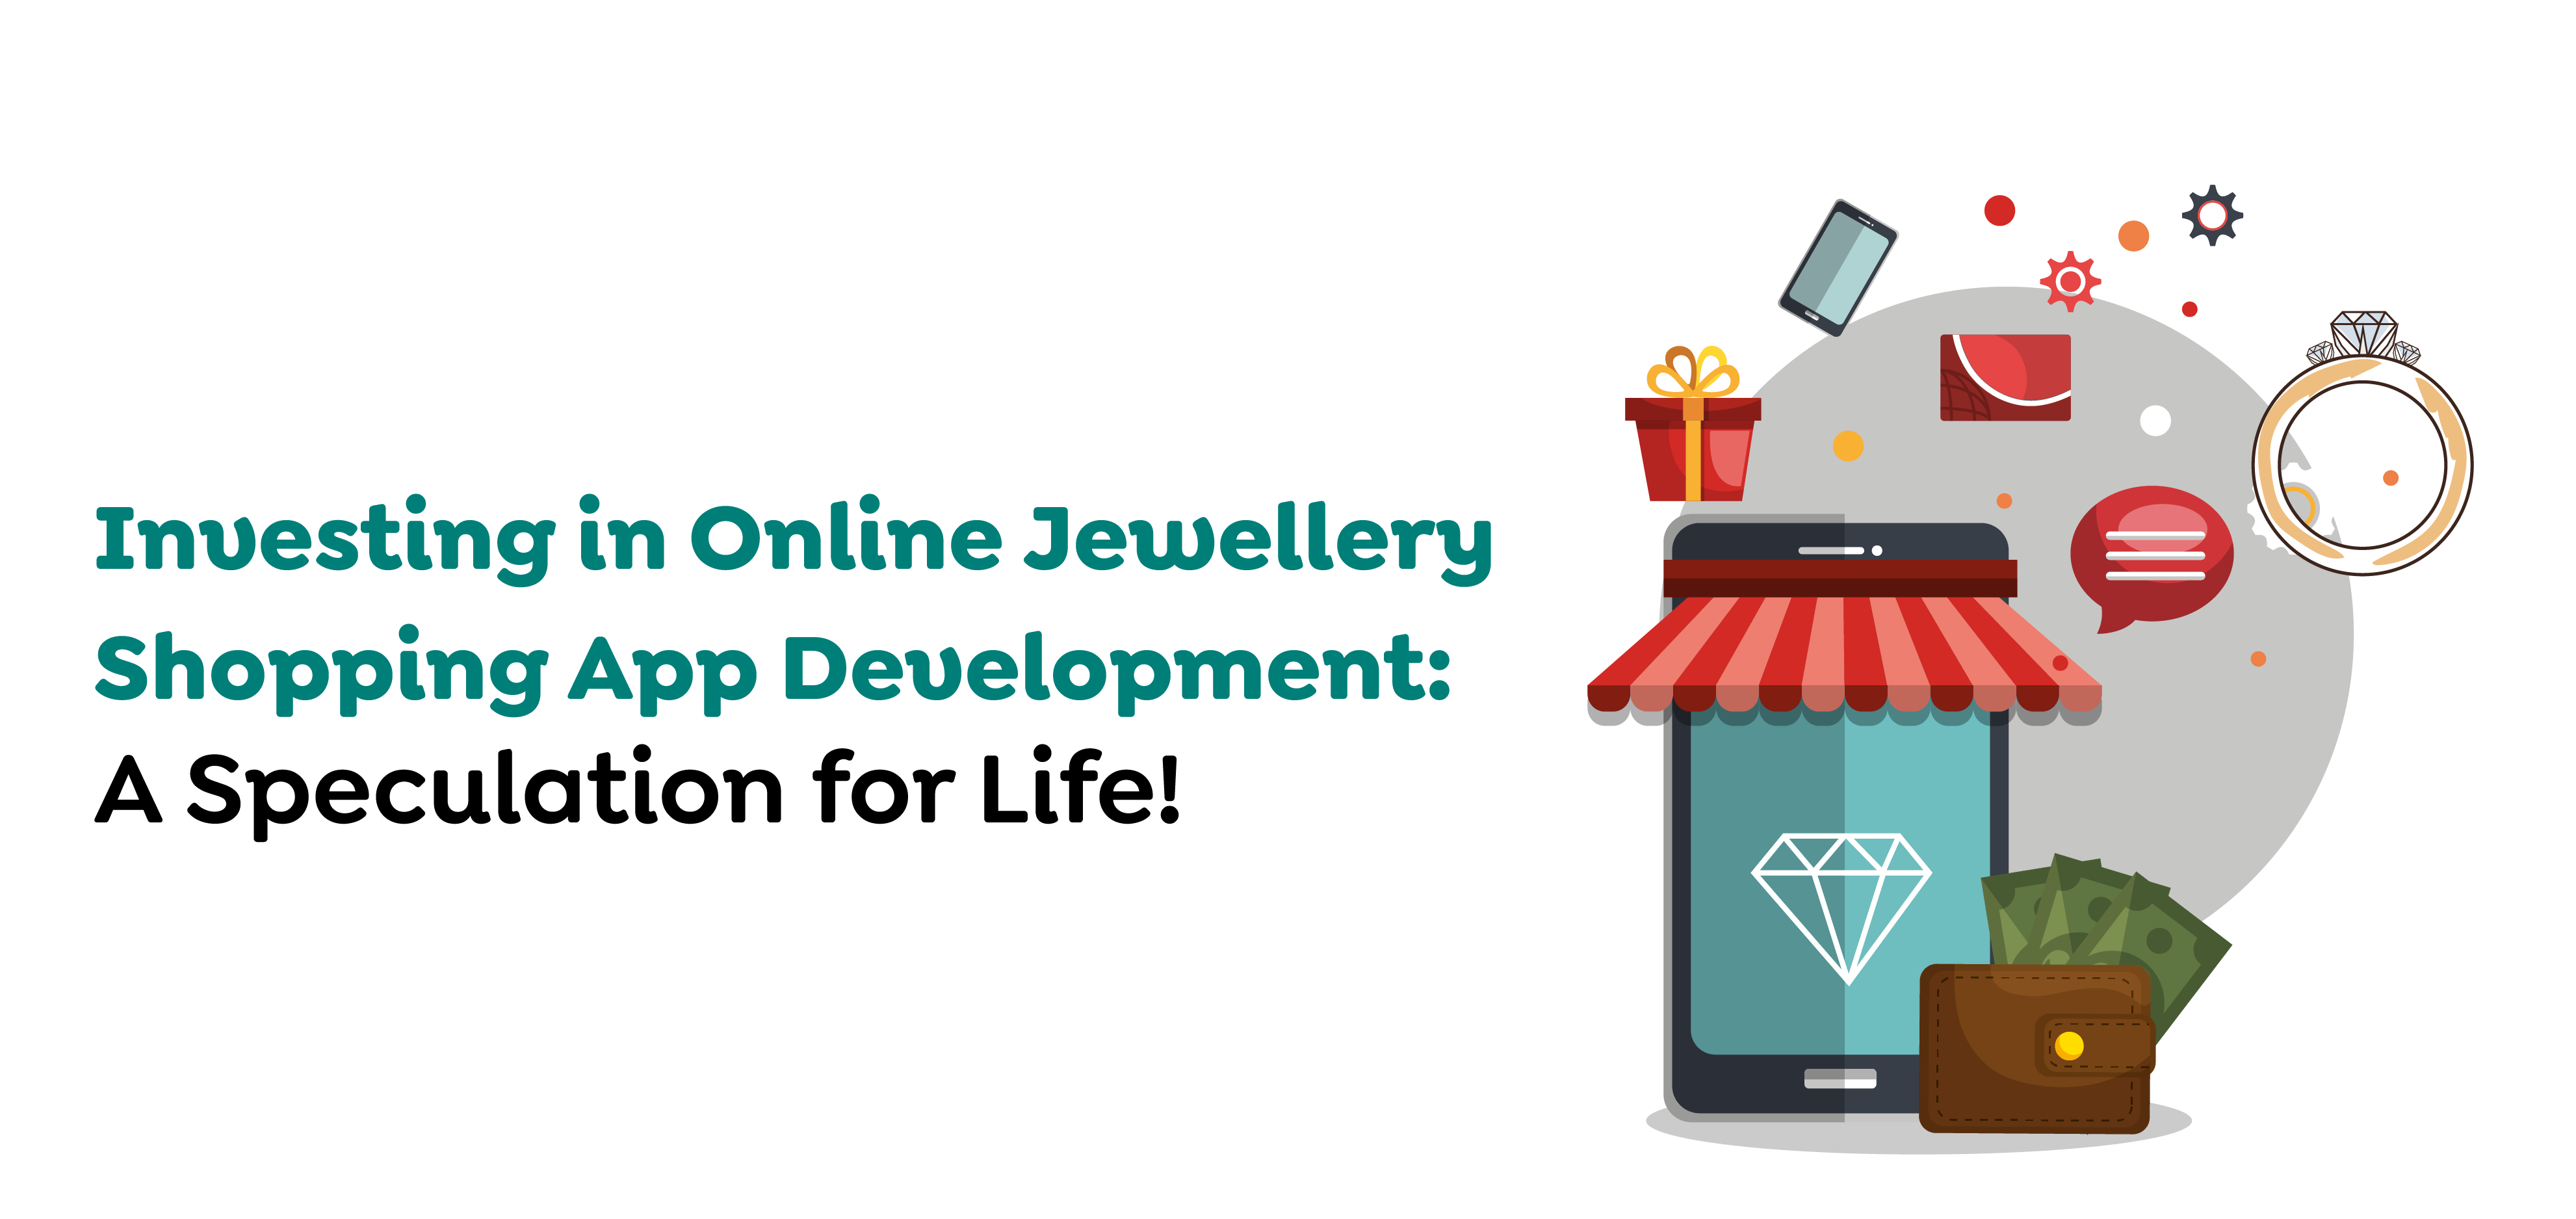 Online Jewellery Shopping App